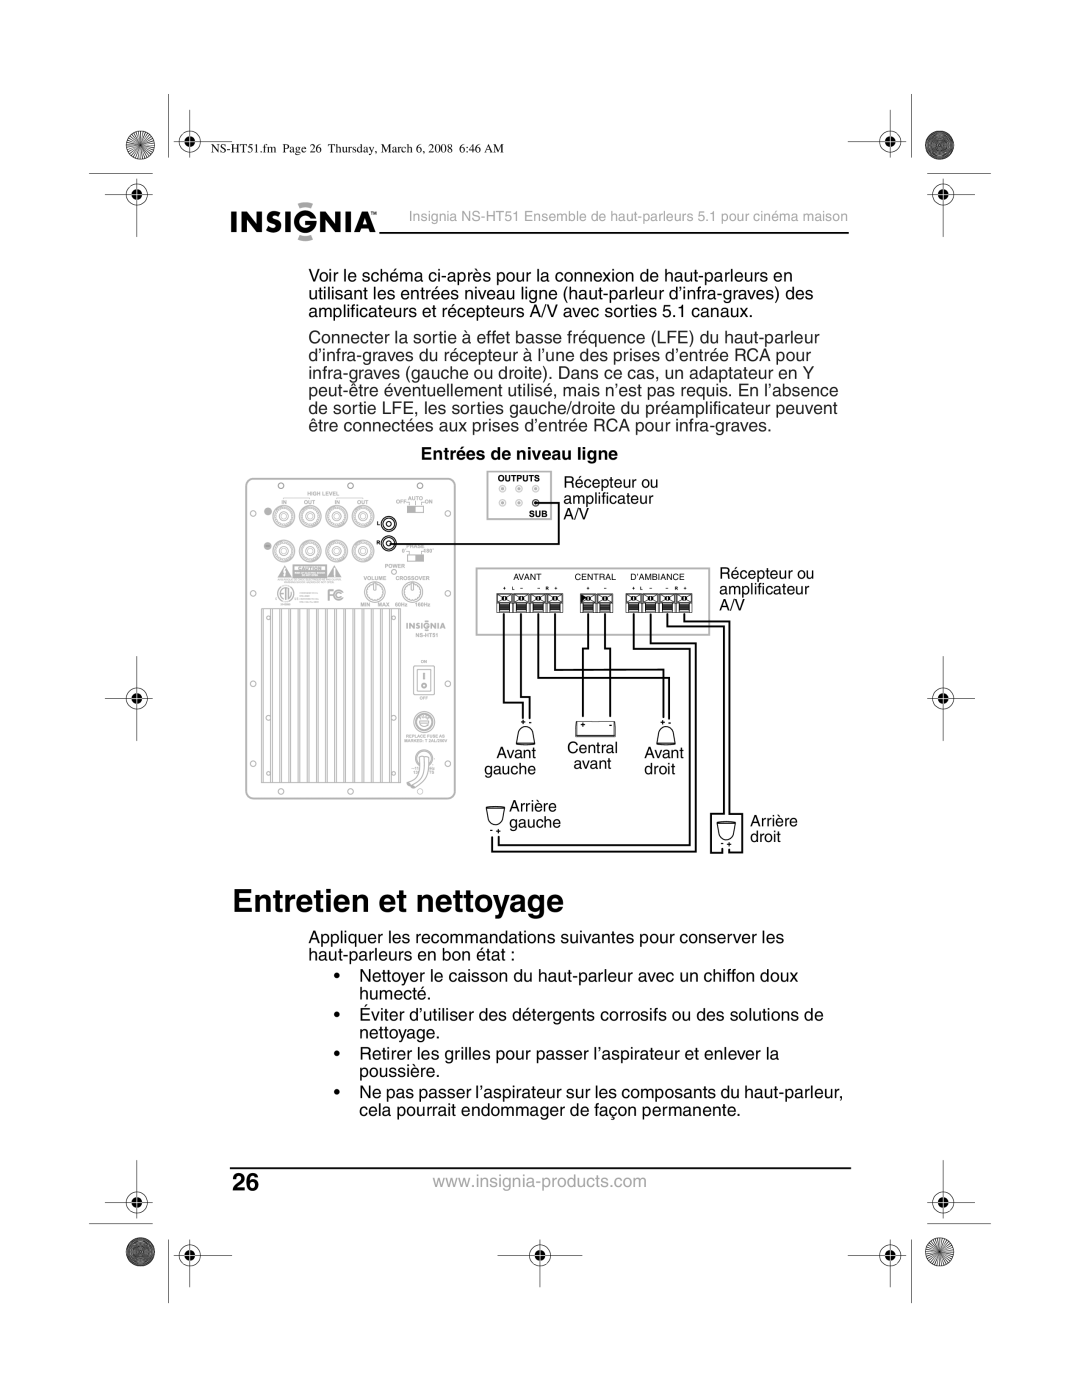 Insignia NS-HT51 manual Entretien et nettoyage, Entrées de niveau ligne 